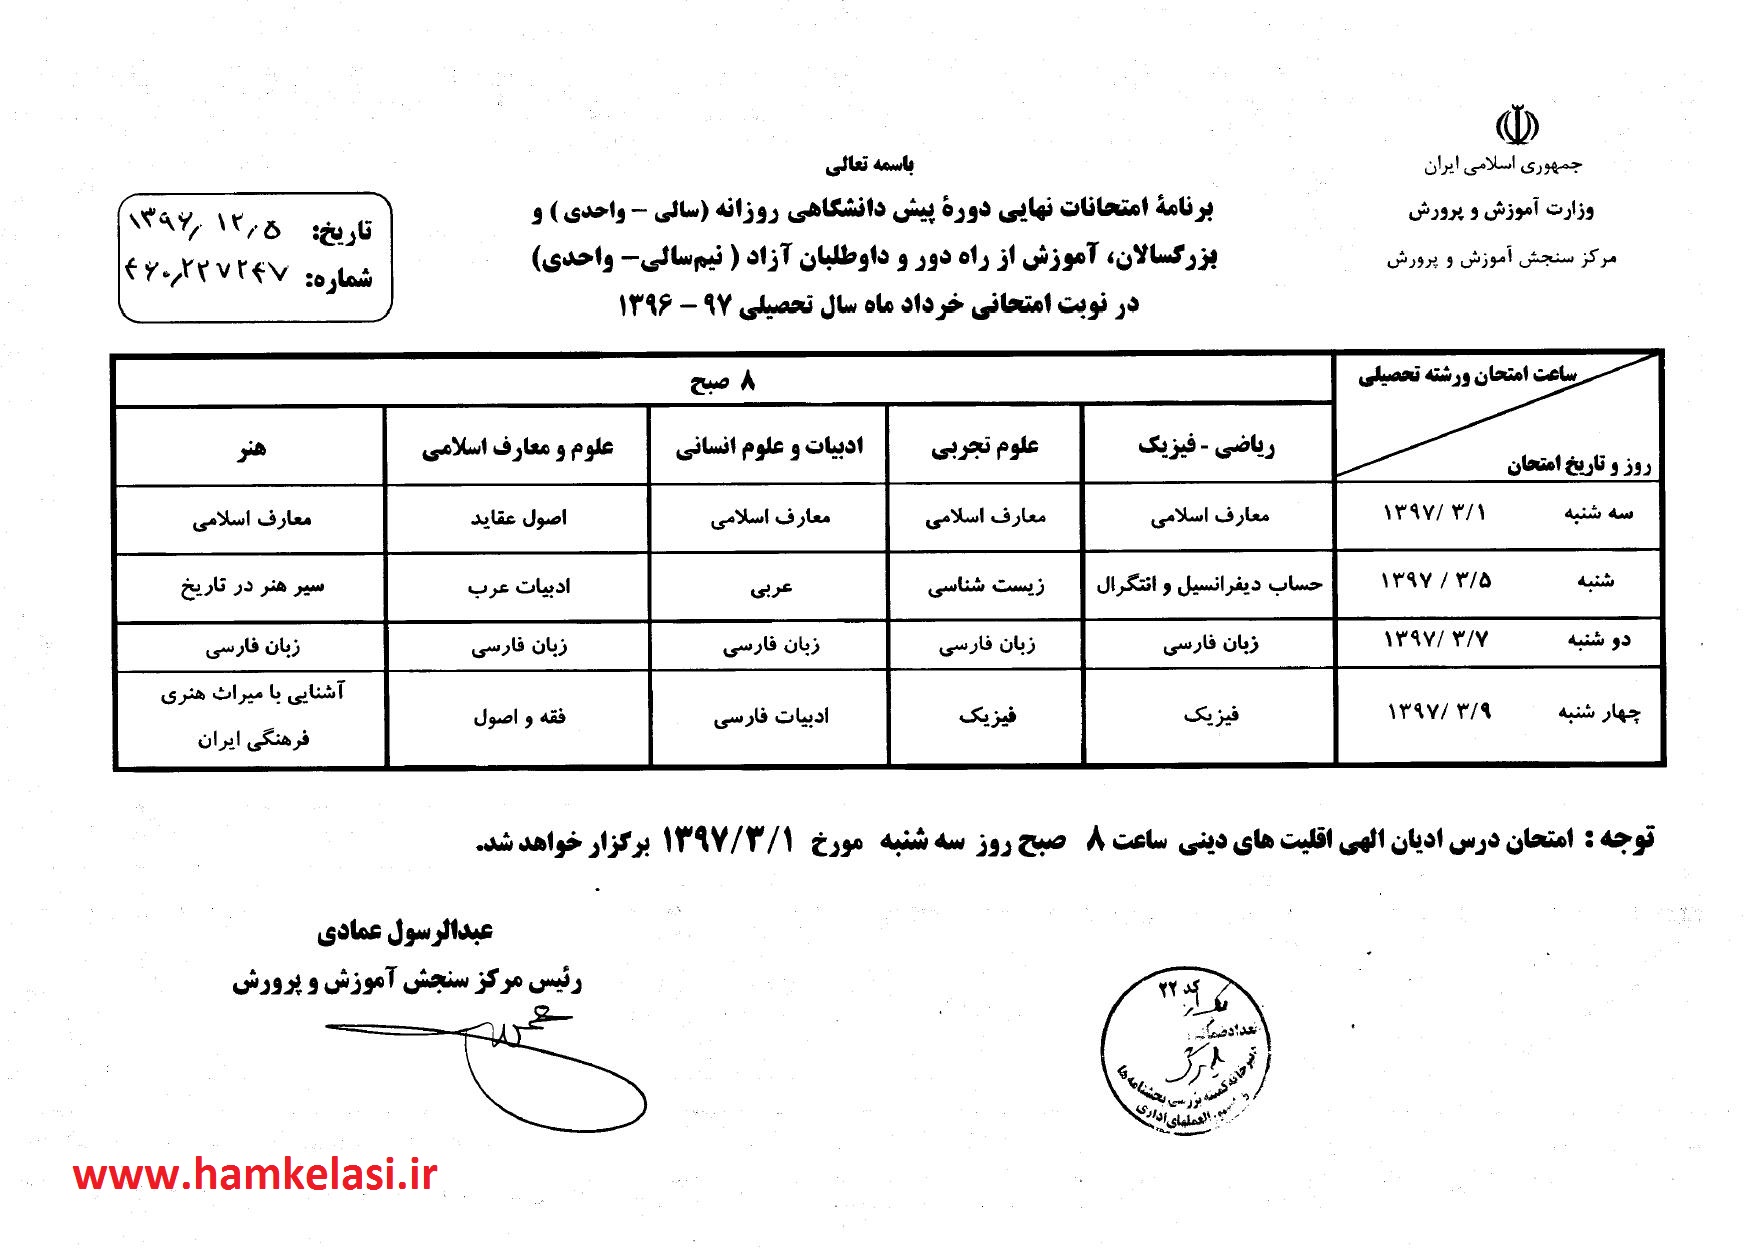 دانلود برنامه امتحانات نهايي پيش دانشگاهي خرداد 97